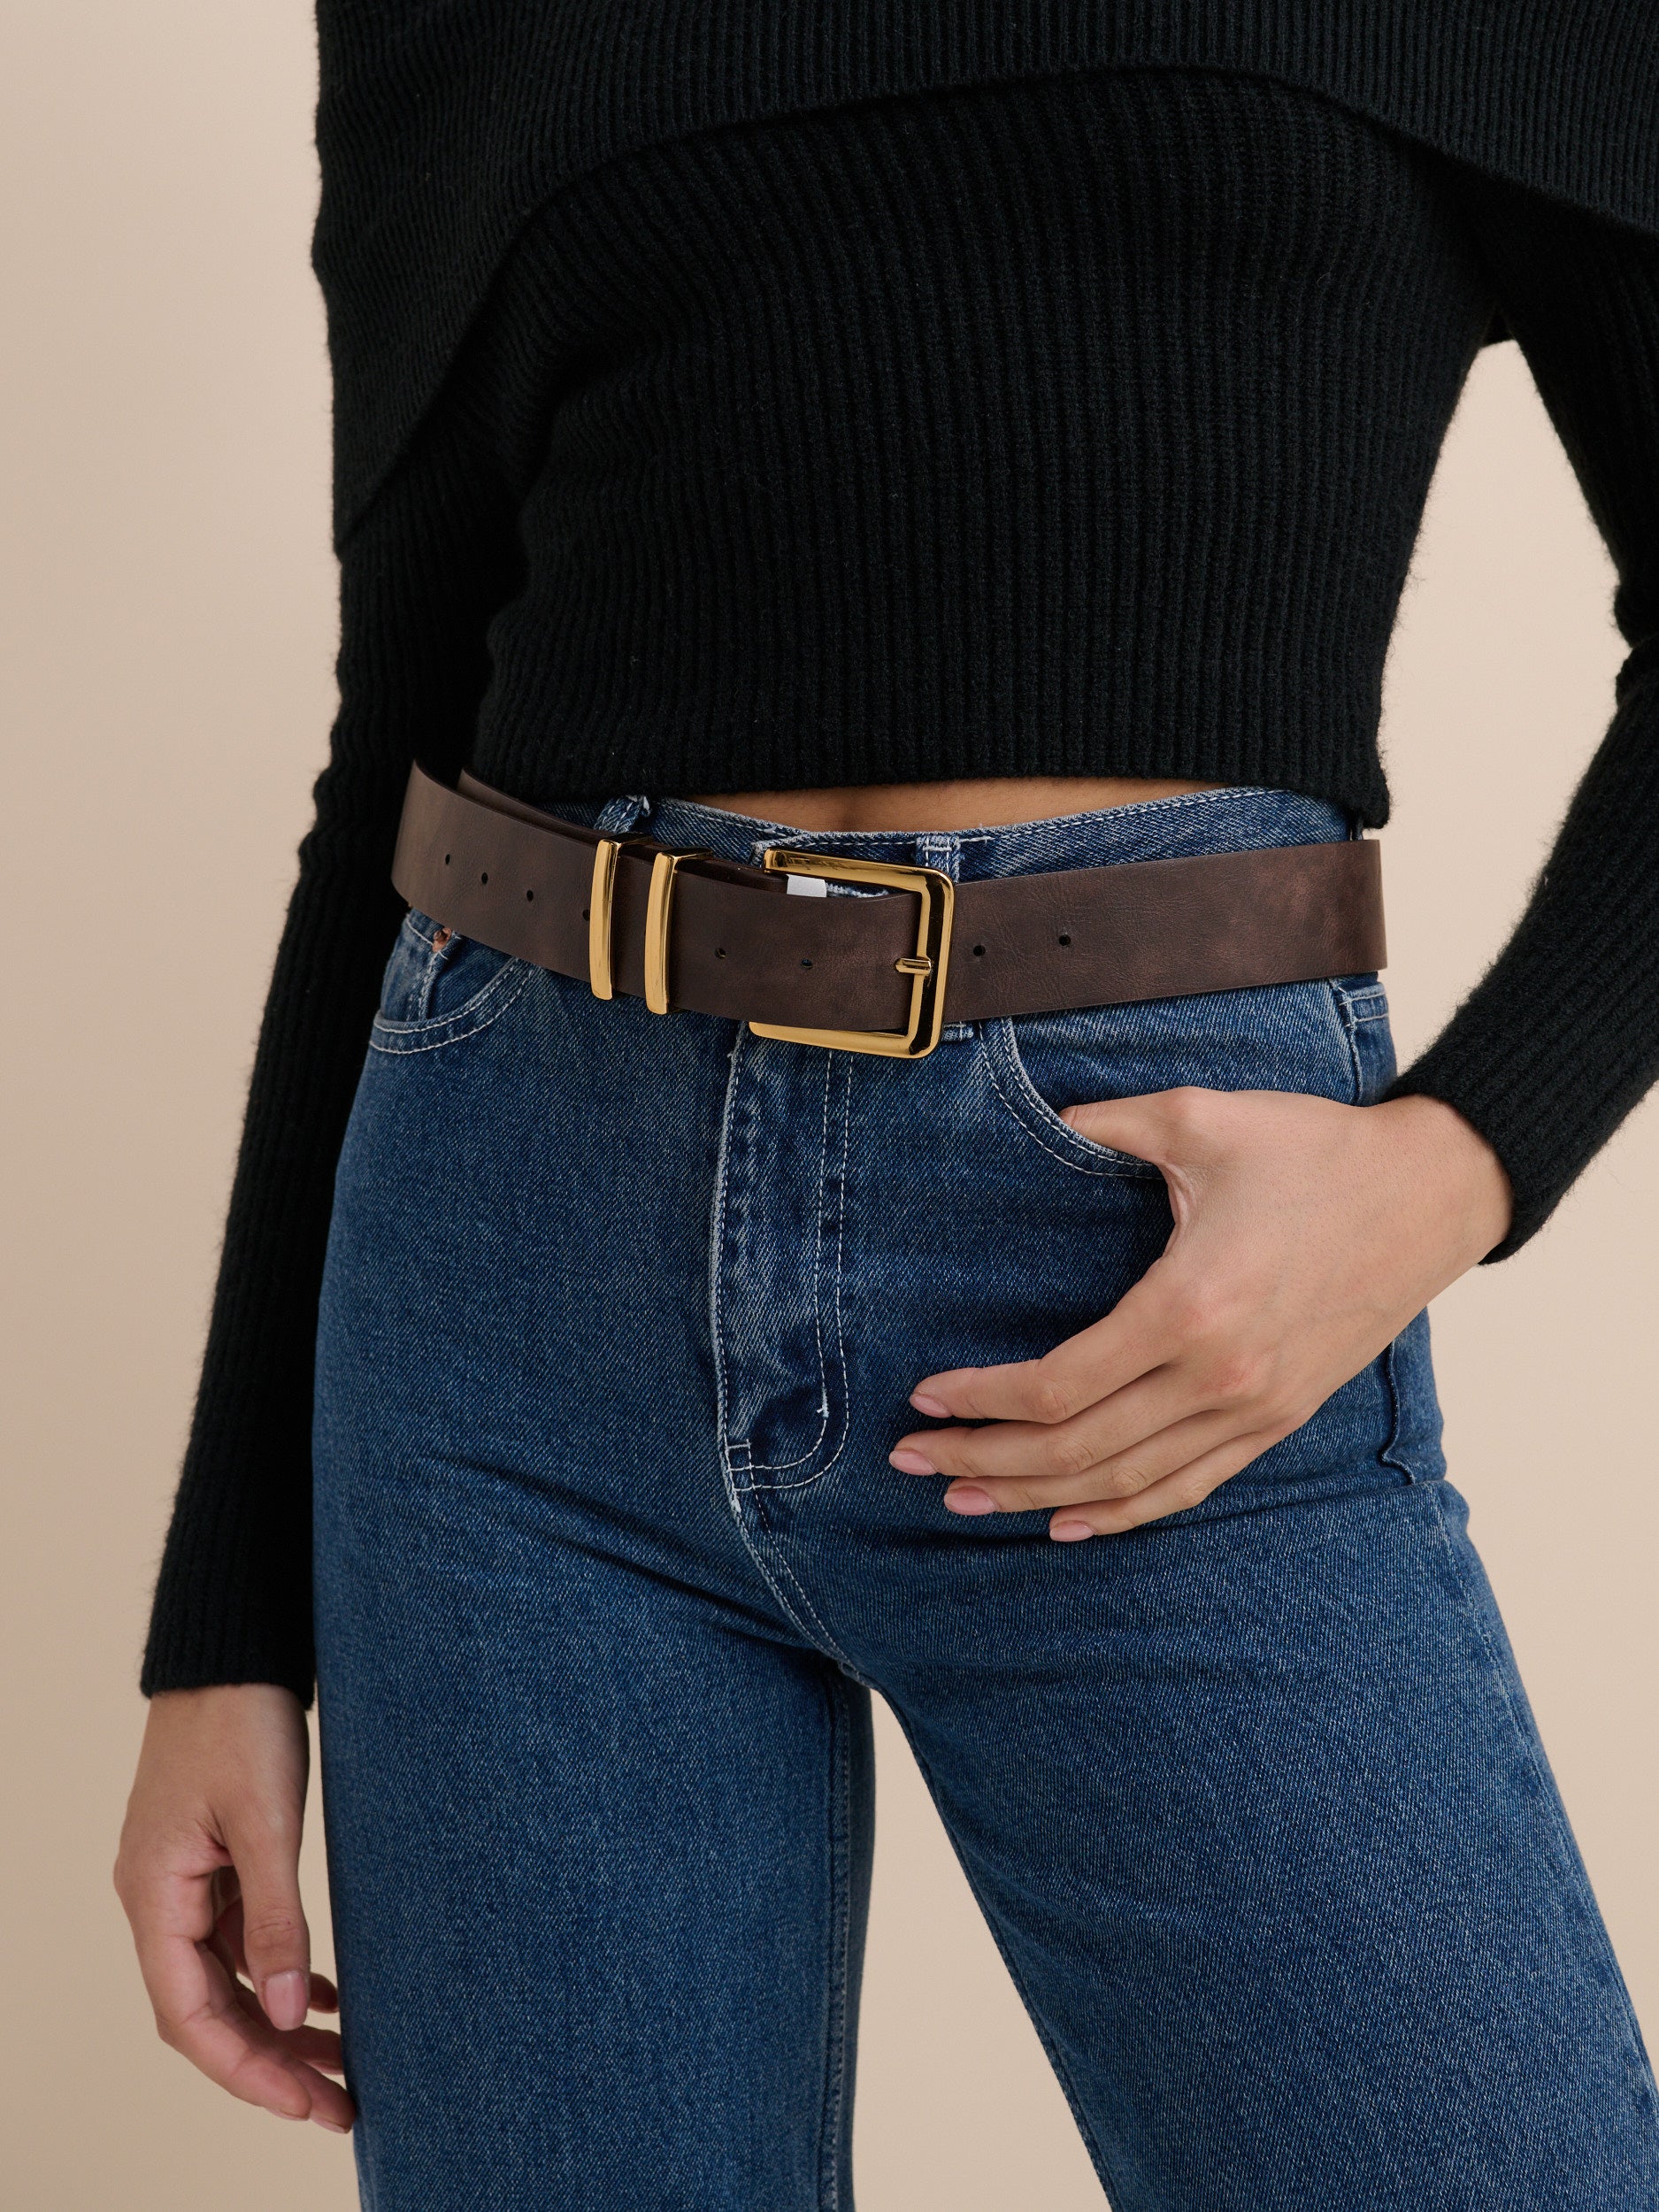 Western Vintage PU Leather Belt in Brown